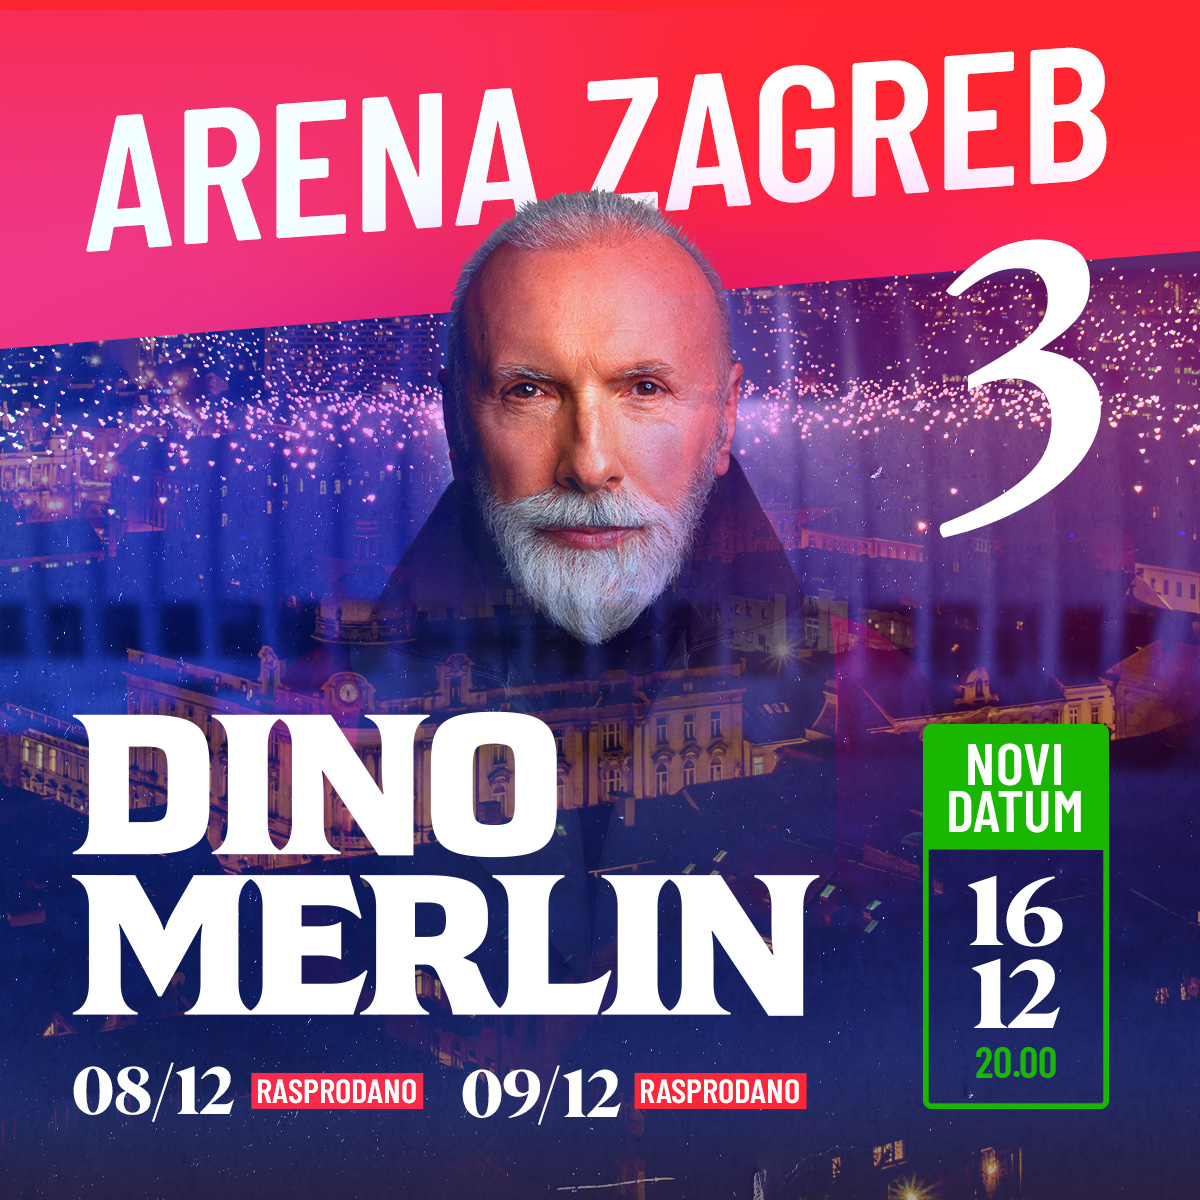 Dino Merlin rasprodao i drugi koncert u Areni Zagreb, najavljen treći datum